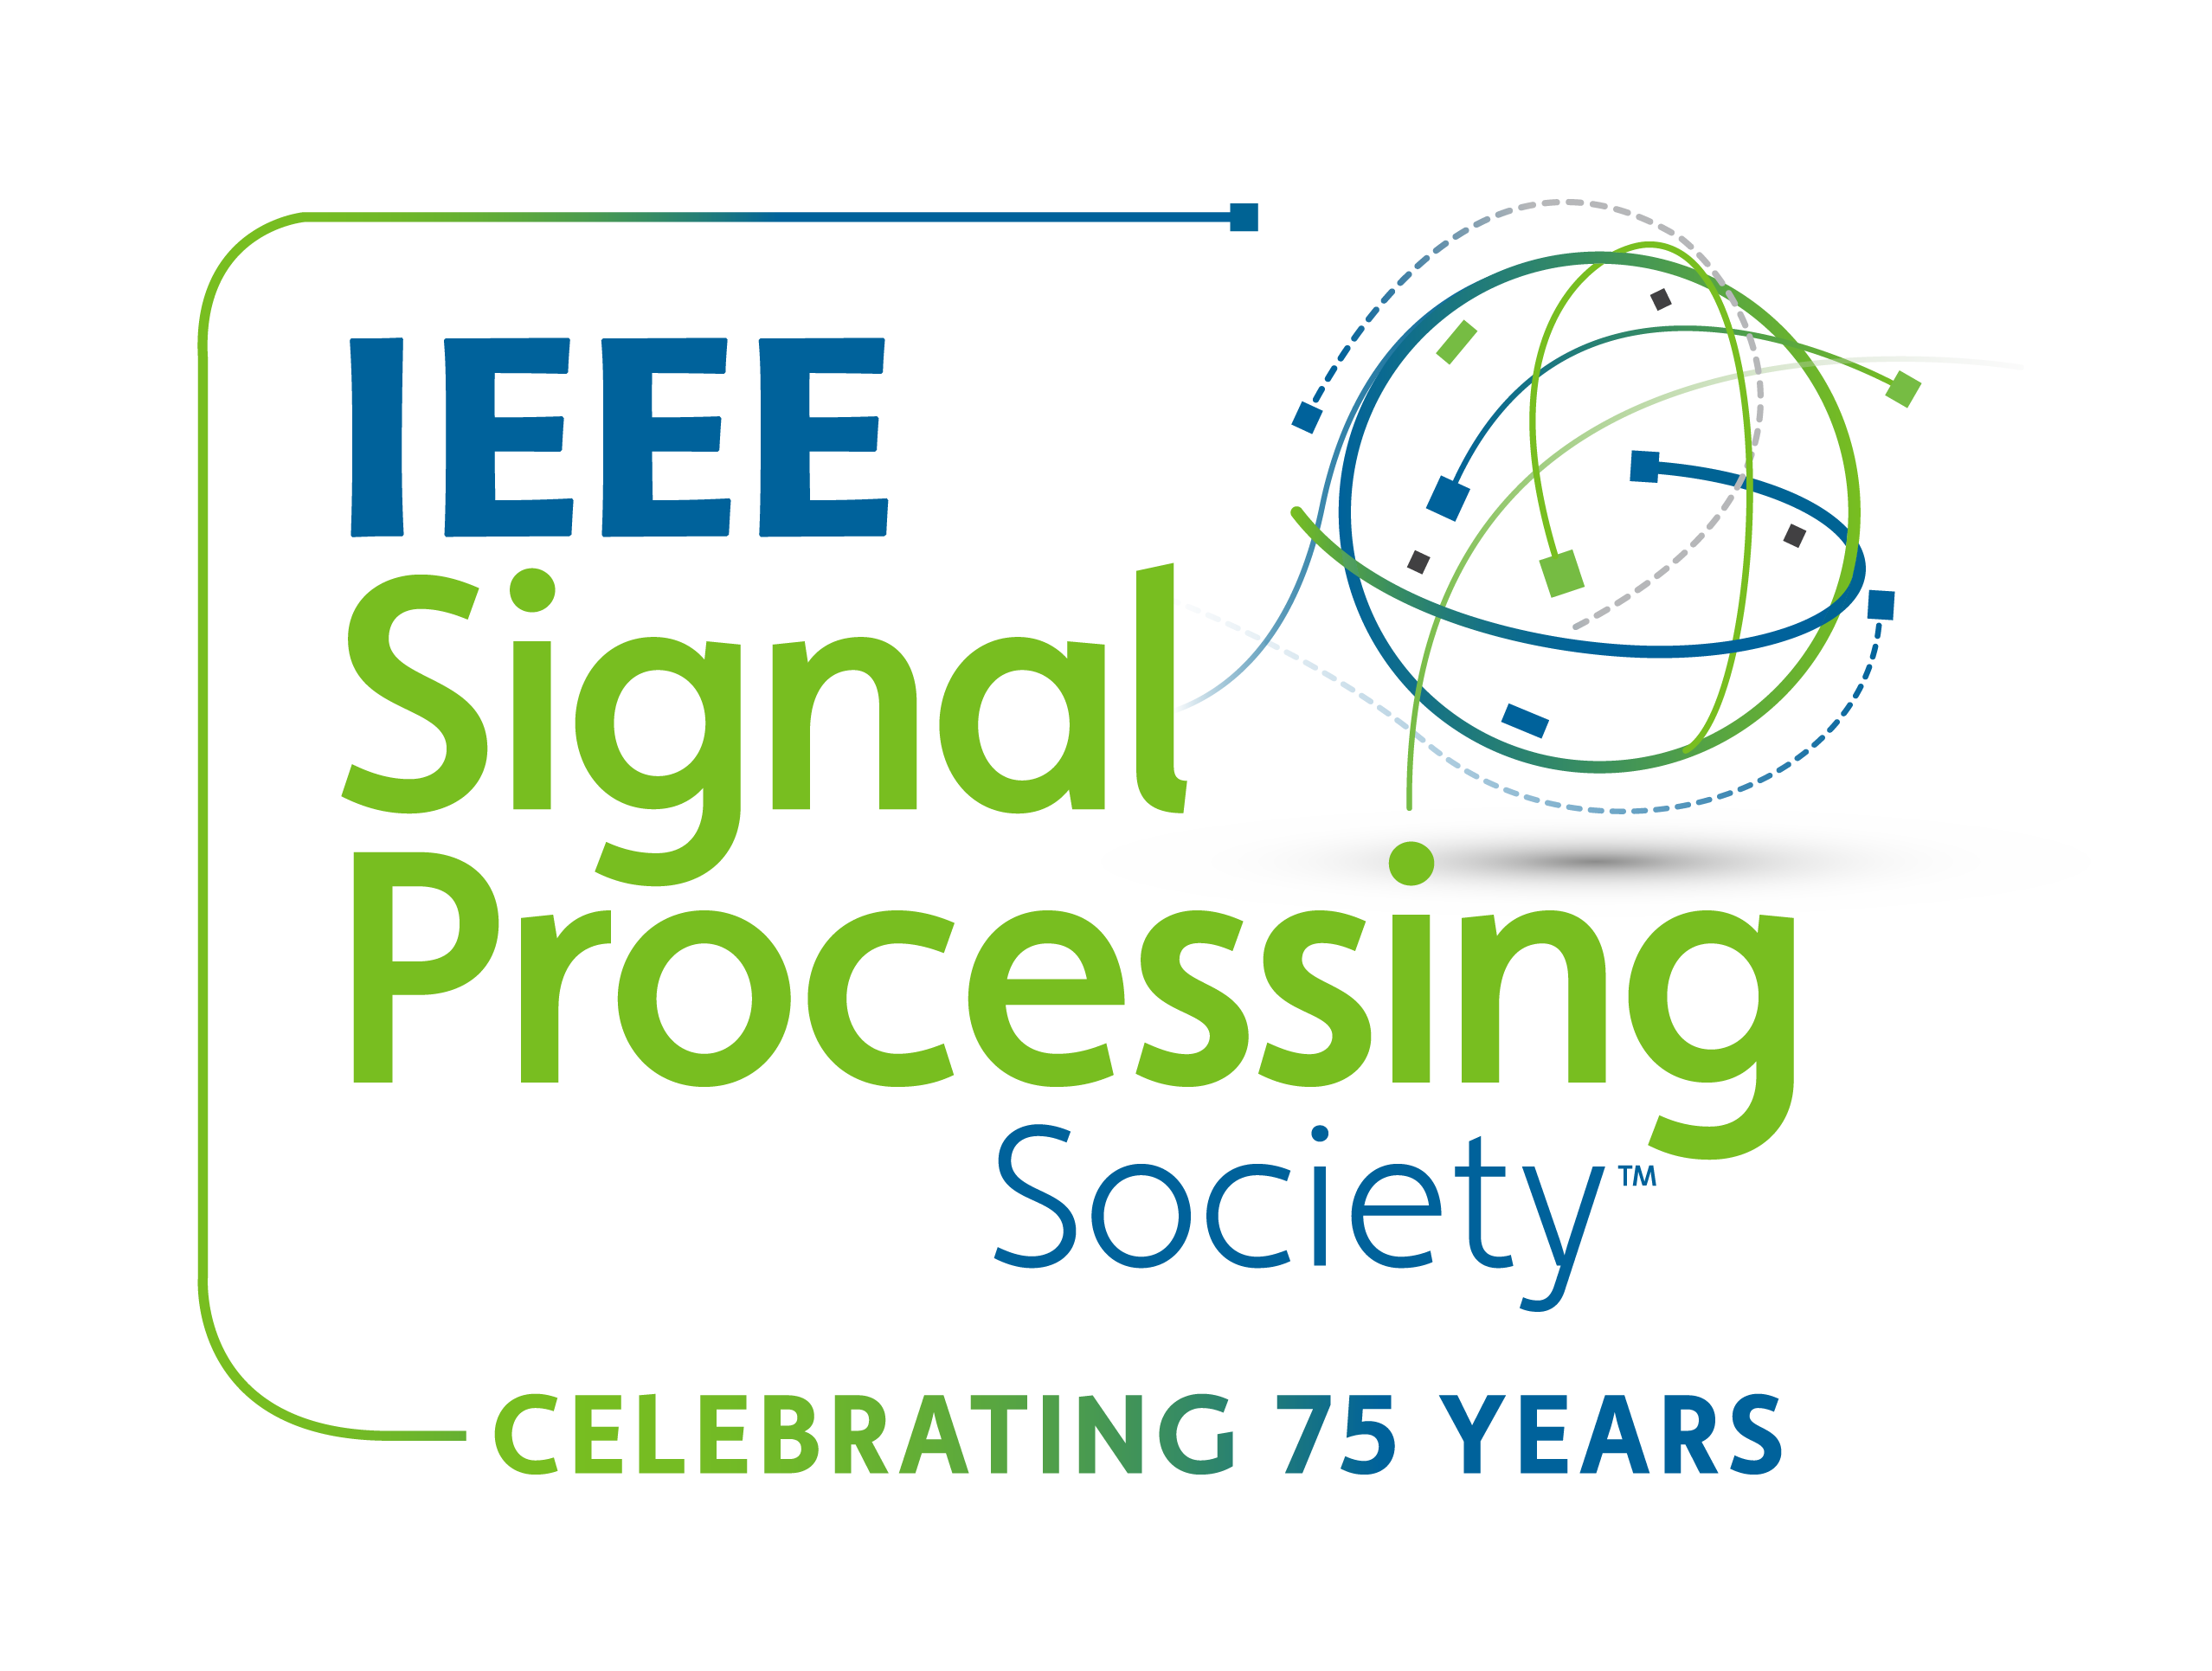 IEEE SPS